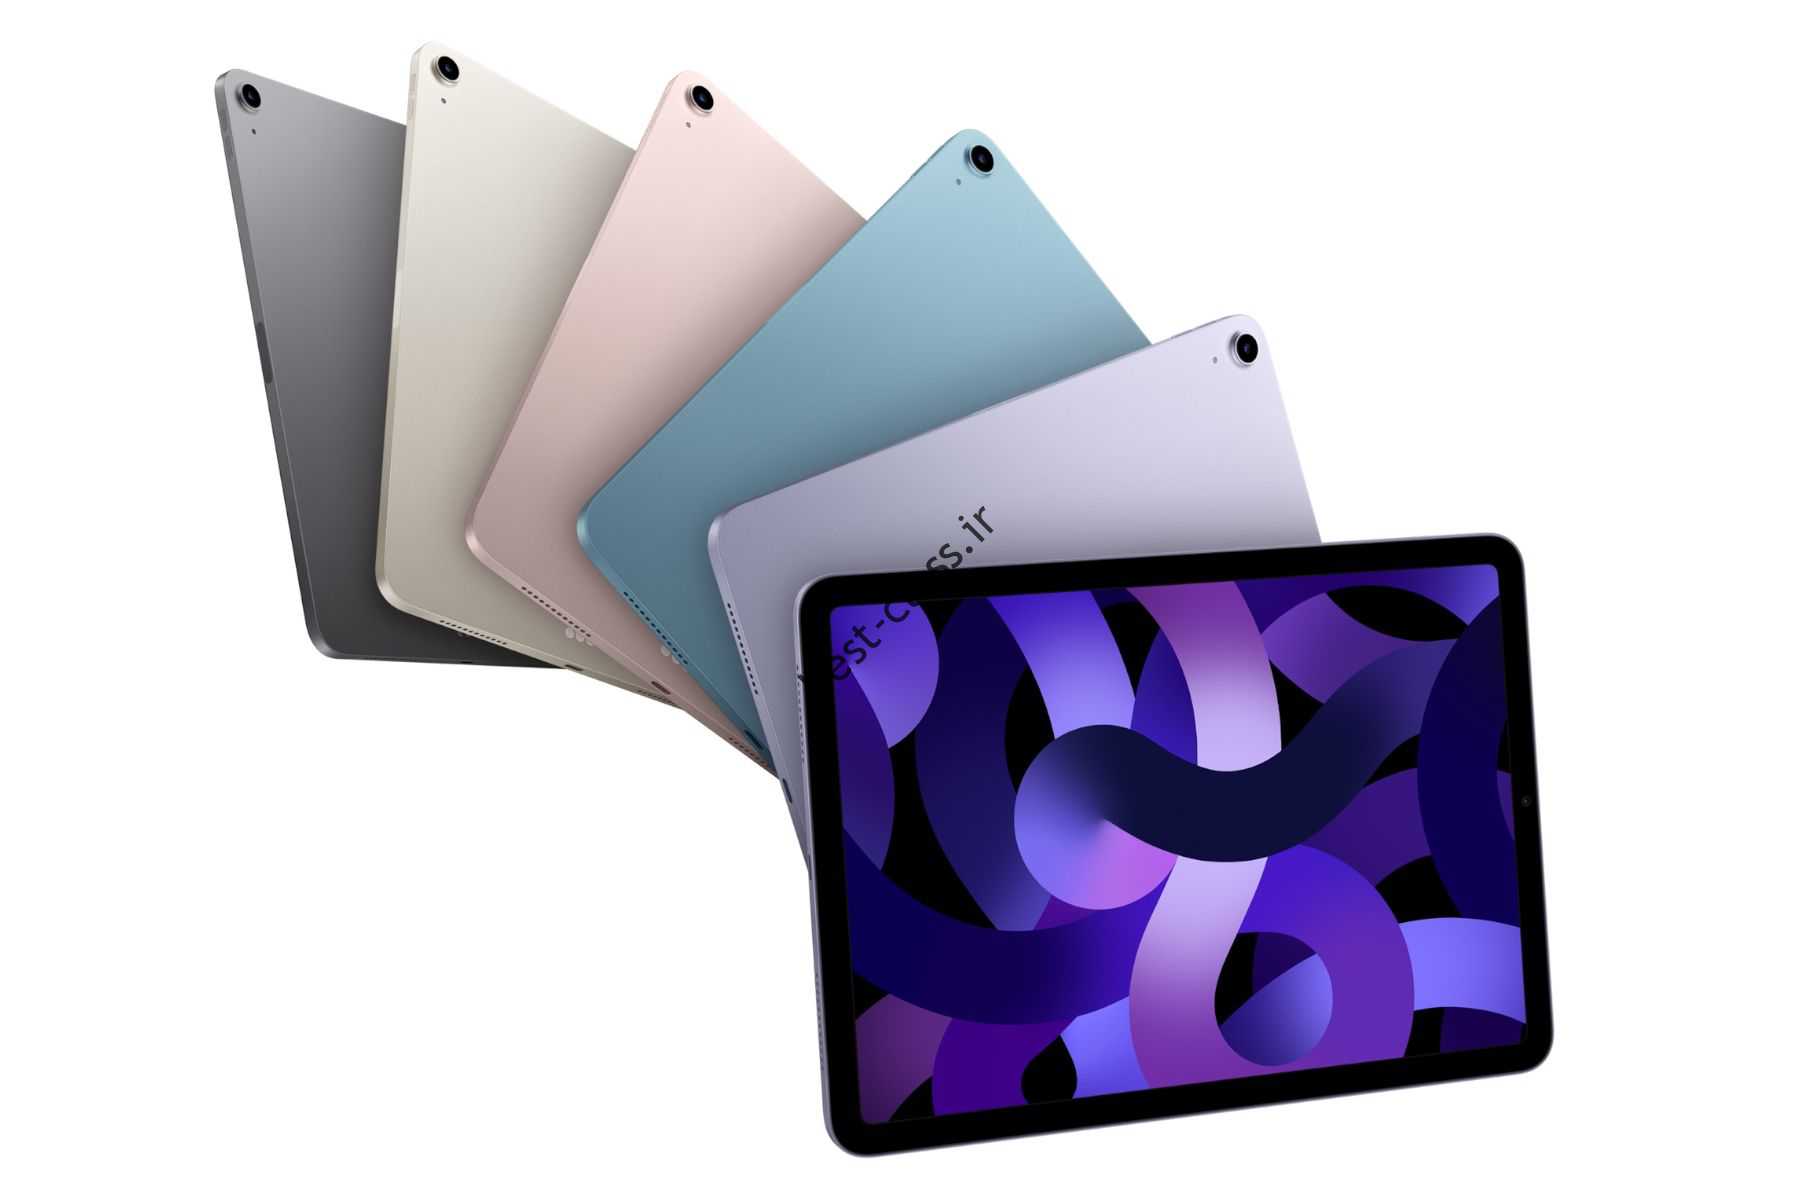 رنگ های مختلف تبلت آیپد ایر 2022 اپل / Apple iPad Air 2022